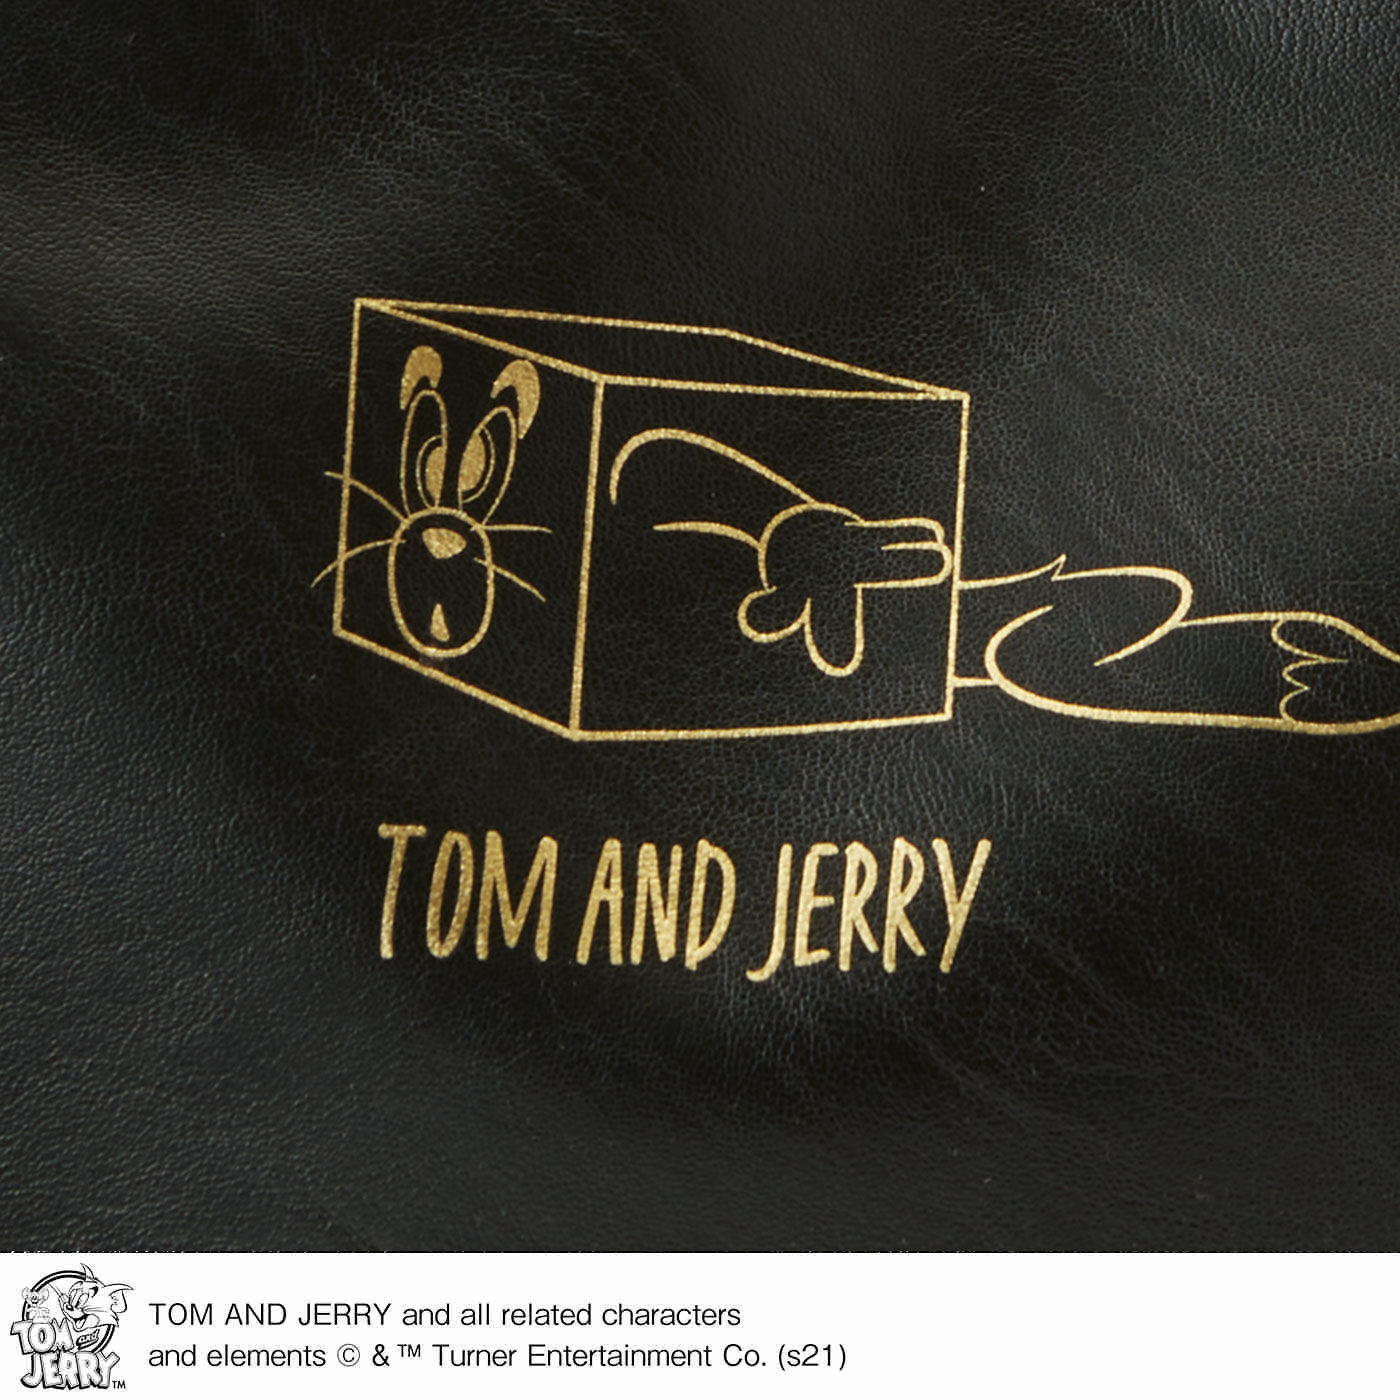 Real Stock|フラウグラット　TOM and JERRY 連れてって 大きめブラックトートバッグ〈トム〉|レザーライクな合成皮革でお手入れらくちん。トムのイラストをゴールドでプリントし、大人っぽく仕上げました。裏面はプリントが入っていないので、シーンに合わせて使えます。いつも一緒のお守り感覚♪